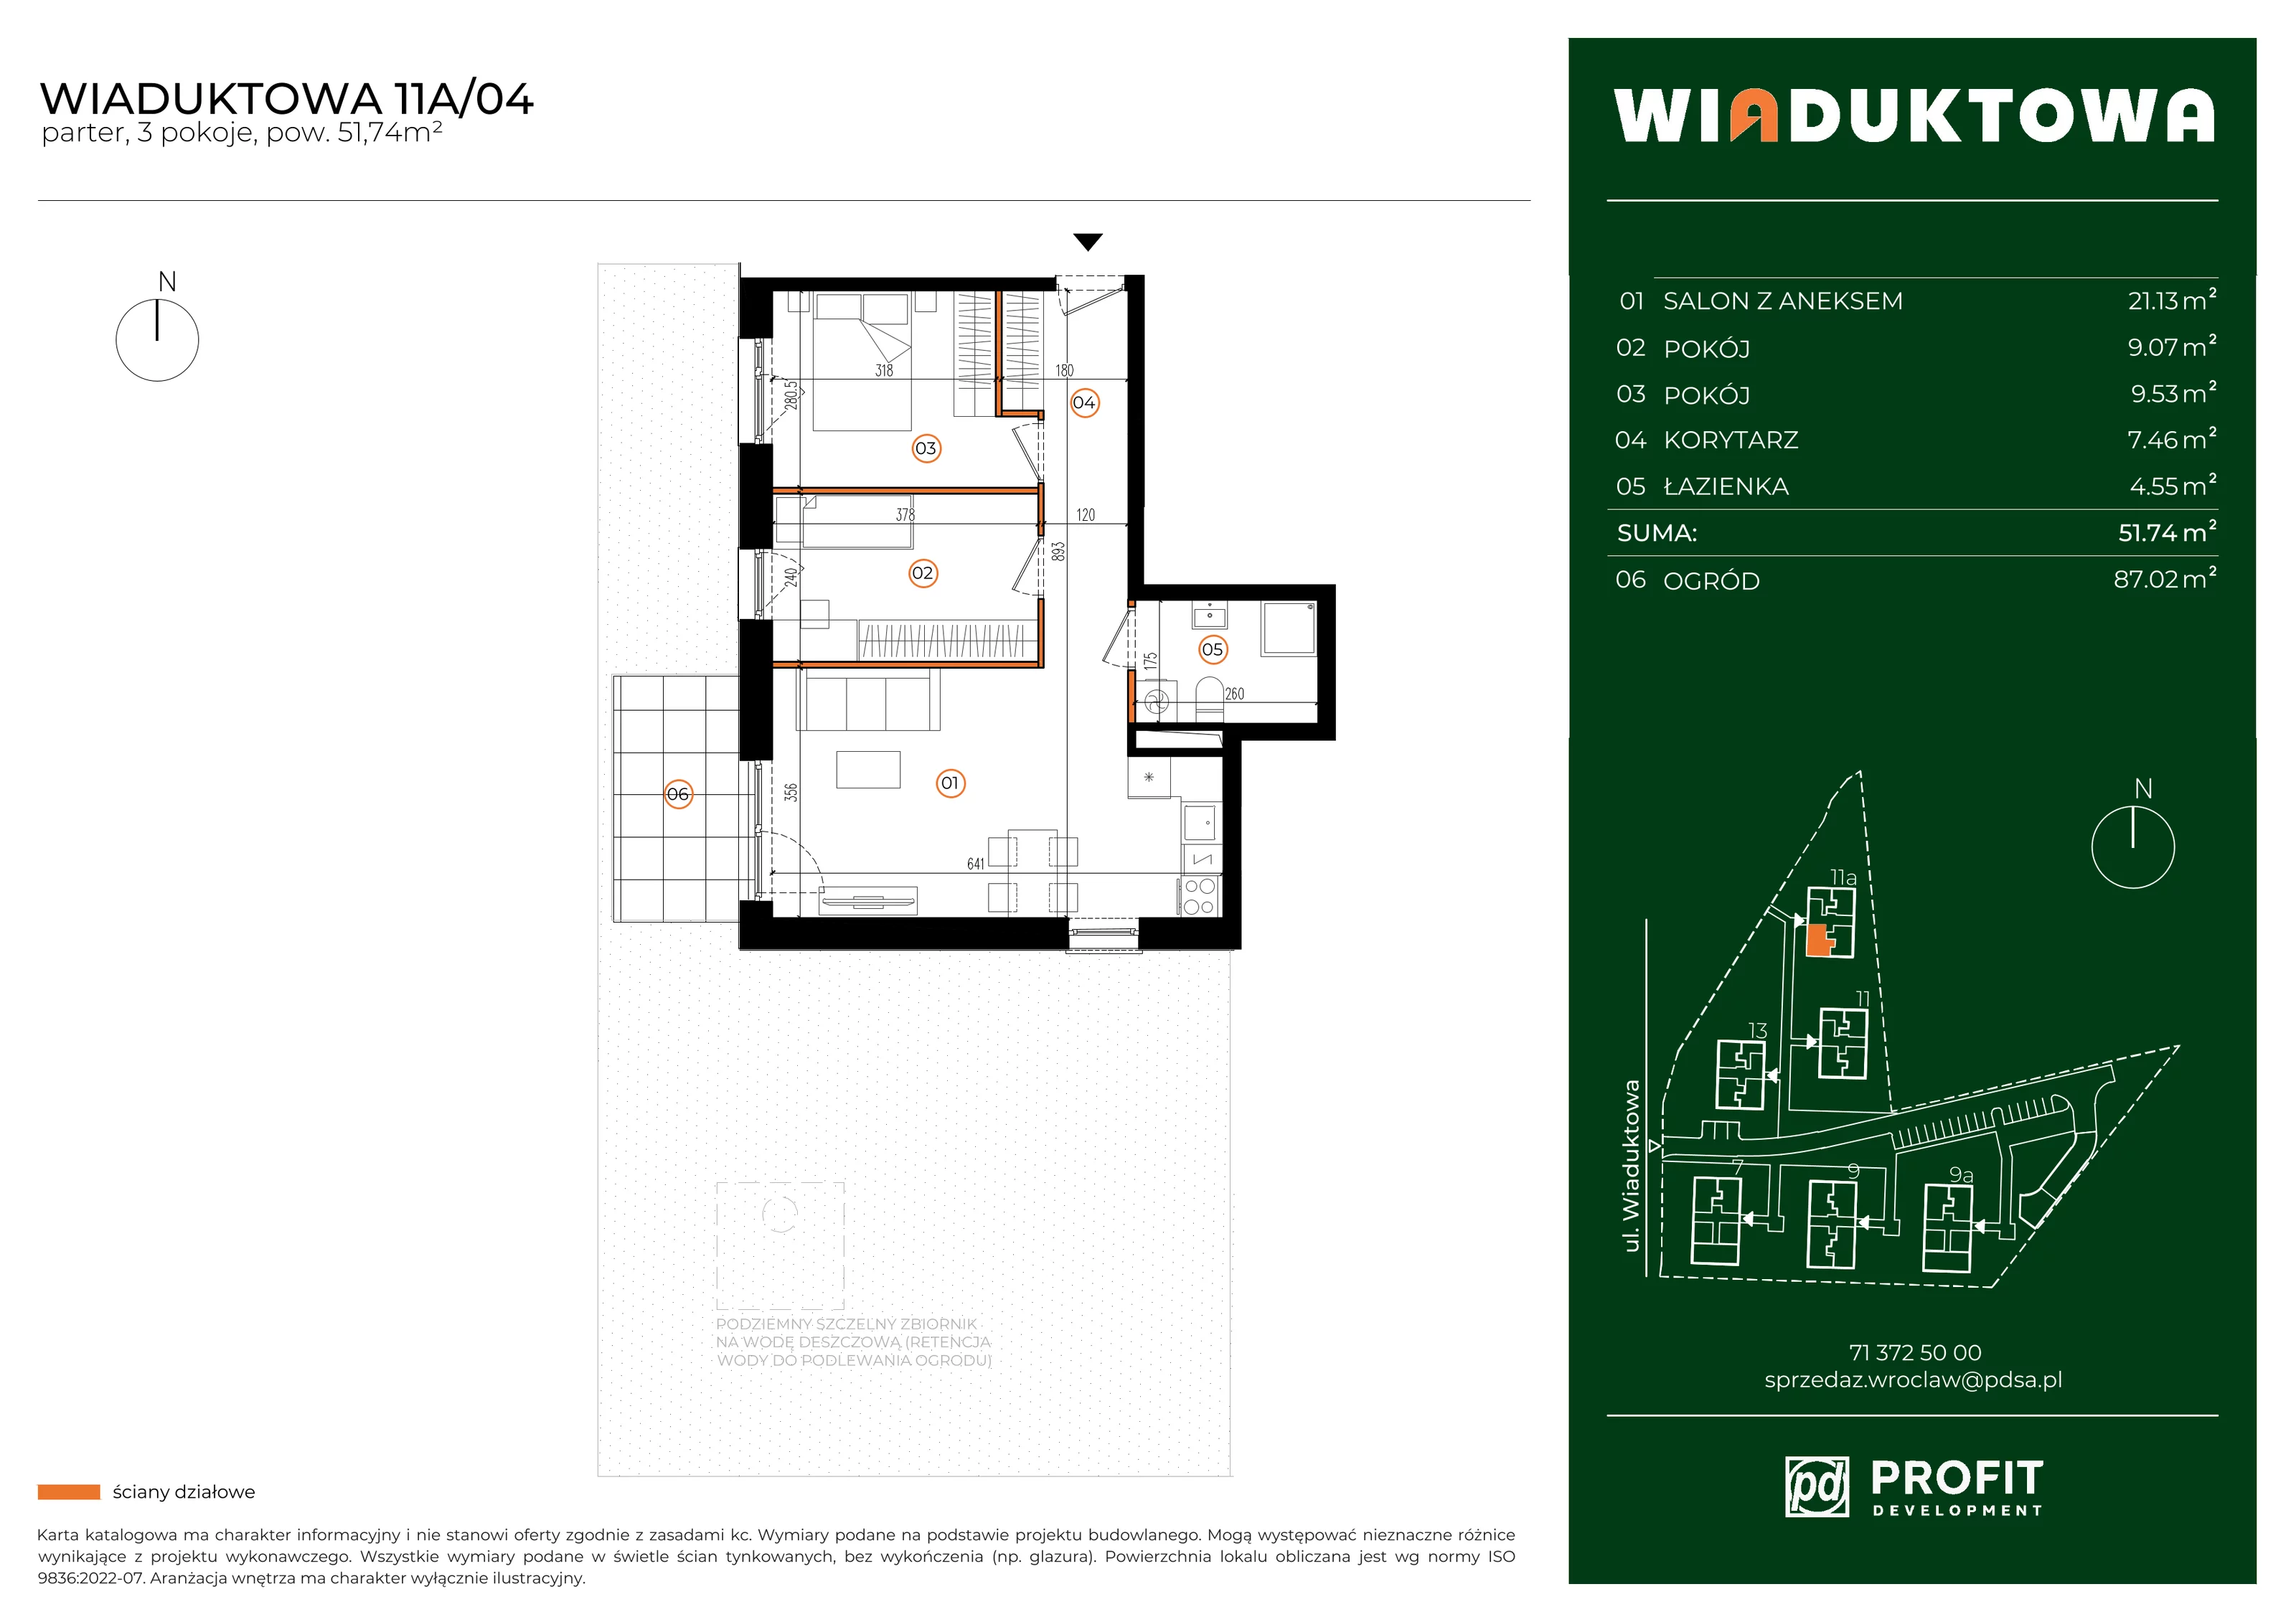 Mieszkanie 51,74 m², parter, oferta nr WI/11A/04, Wiaduktowa, Wrocław, Krzyki-Partynice, Krzyki, ul. Wiaduktowa